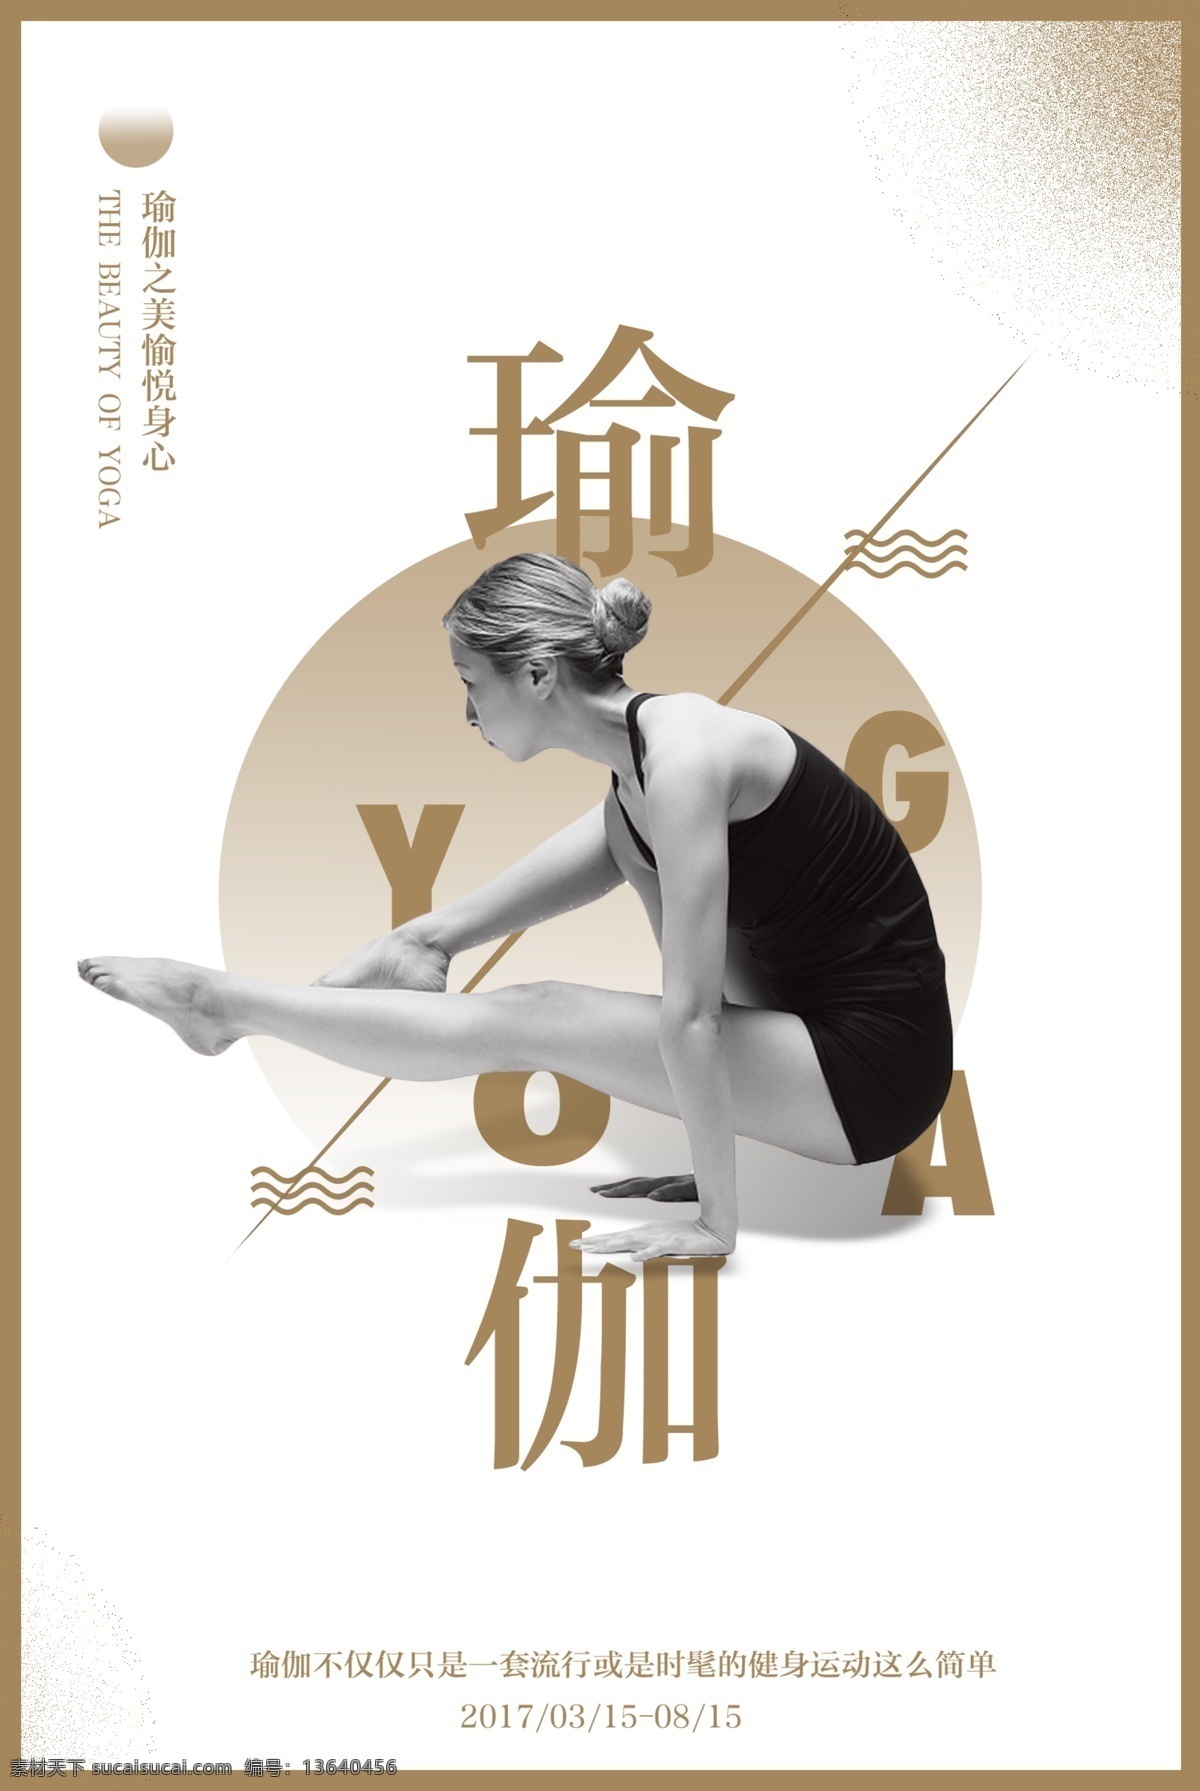 瑜伽海报 创意海报 小清新 女性 舞蹈 跳舞 体操 体操运动员 19年